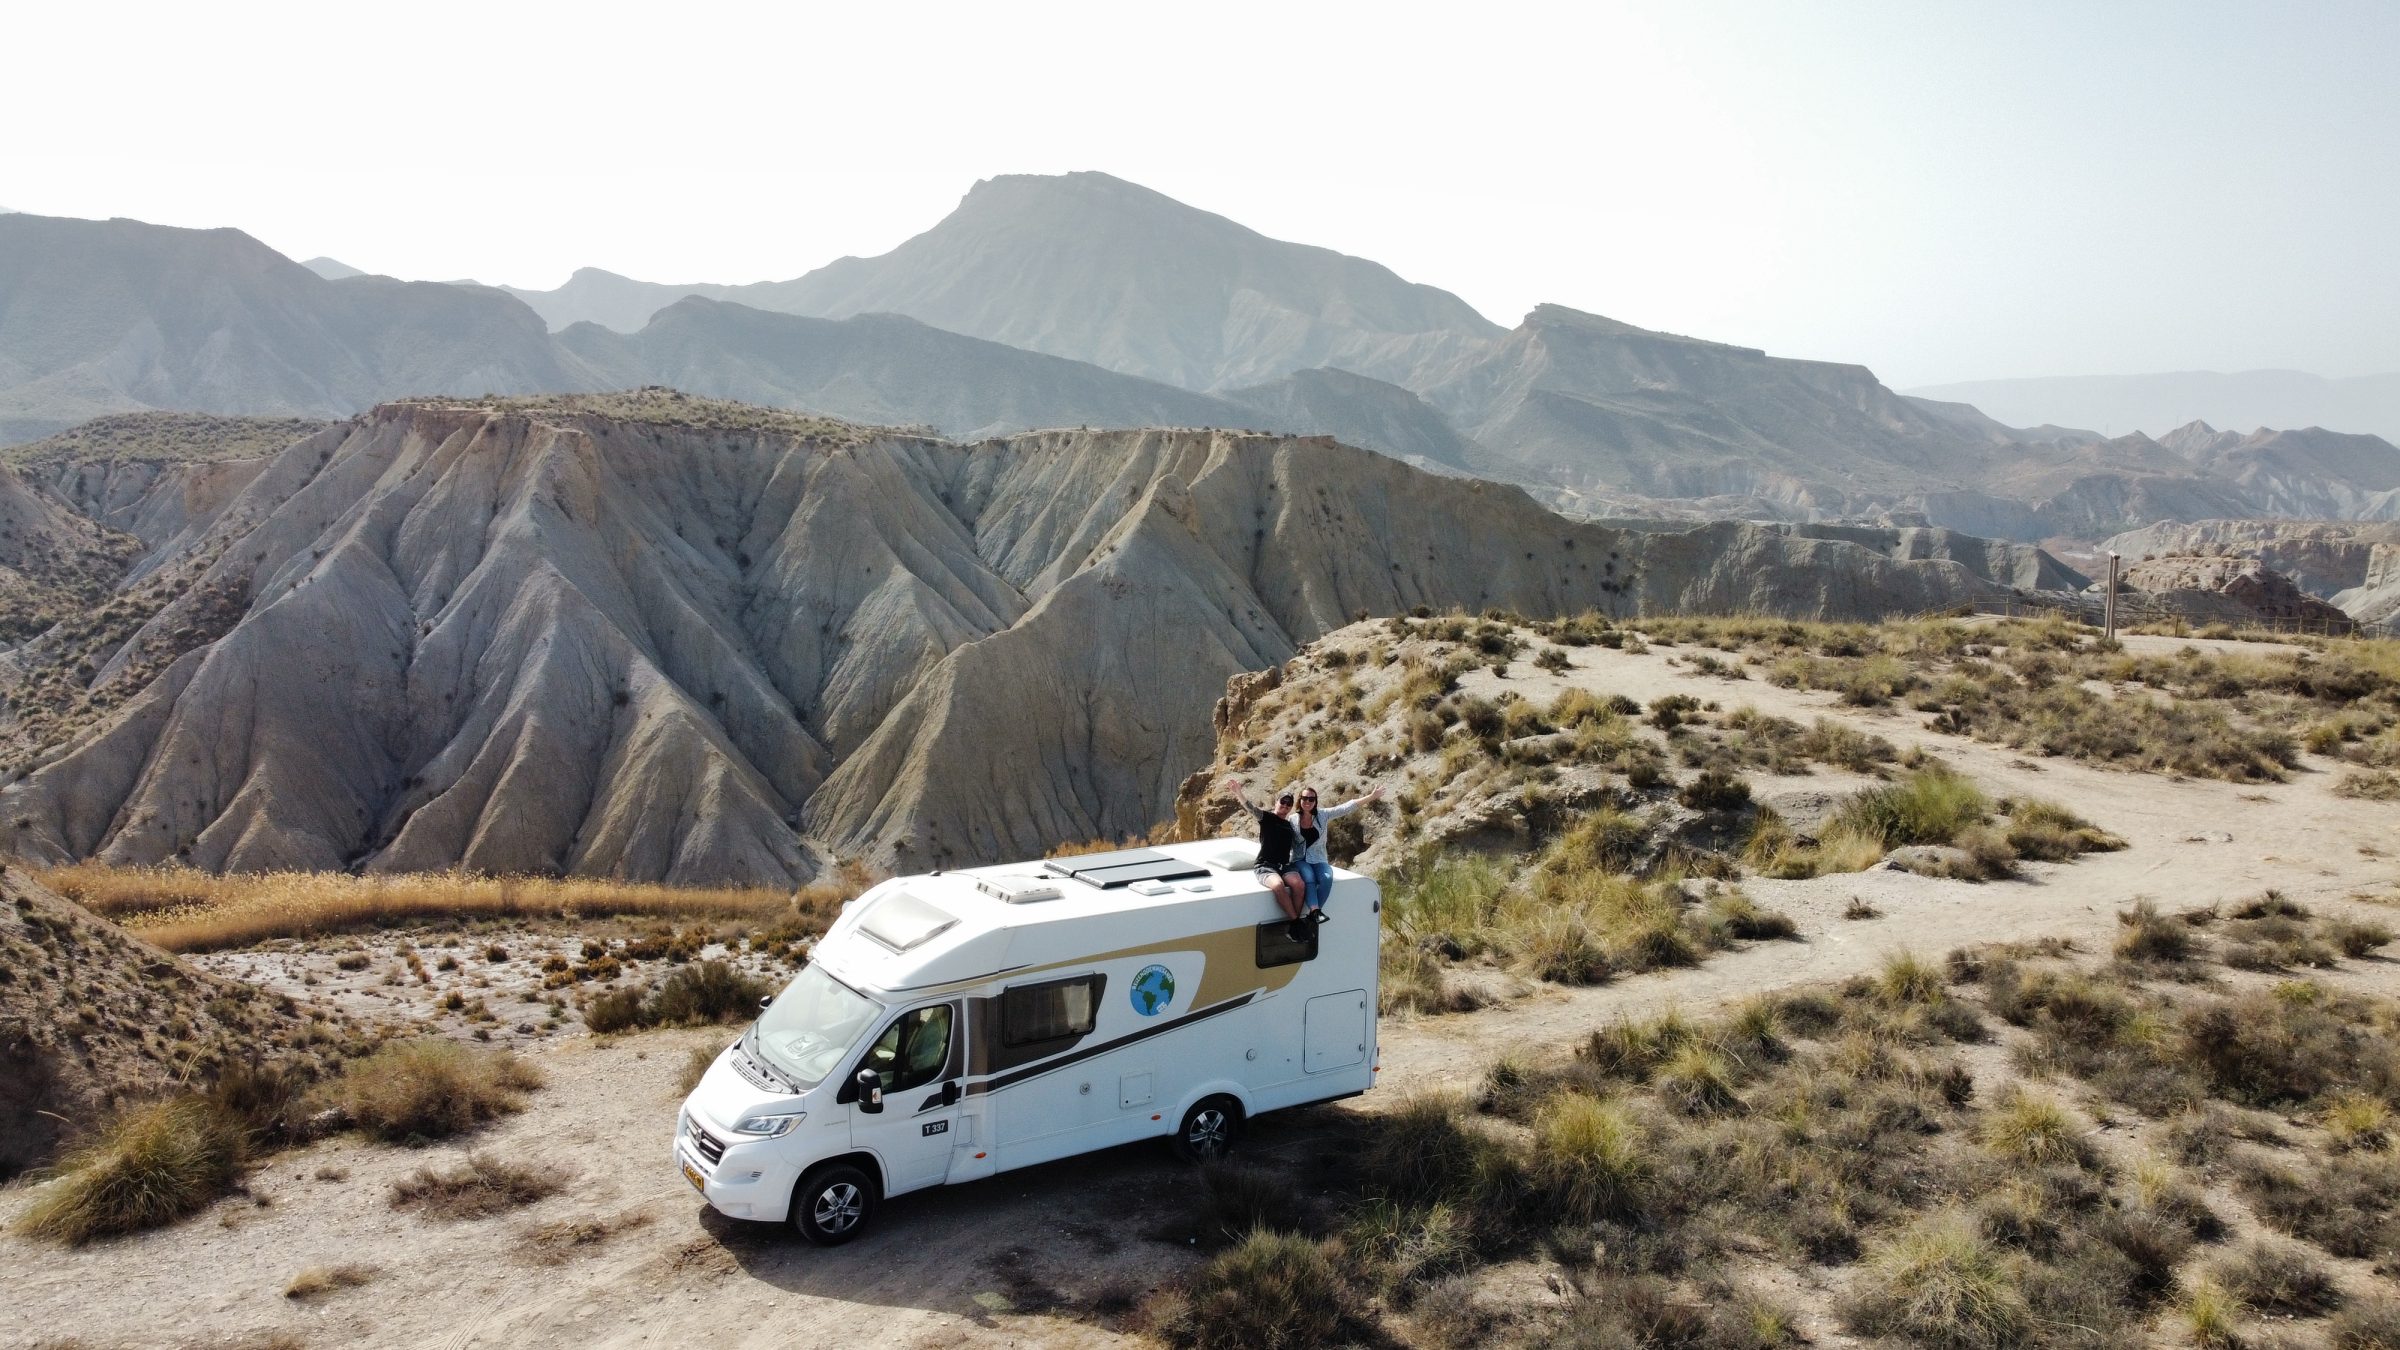 Tabernas-ørkenen | Autocamper tips og steder af interesse i det sydlige Spanien